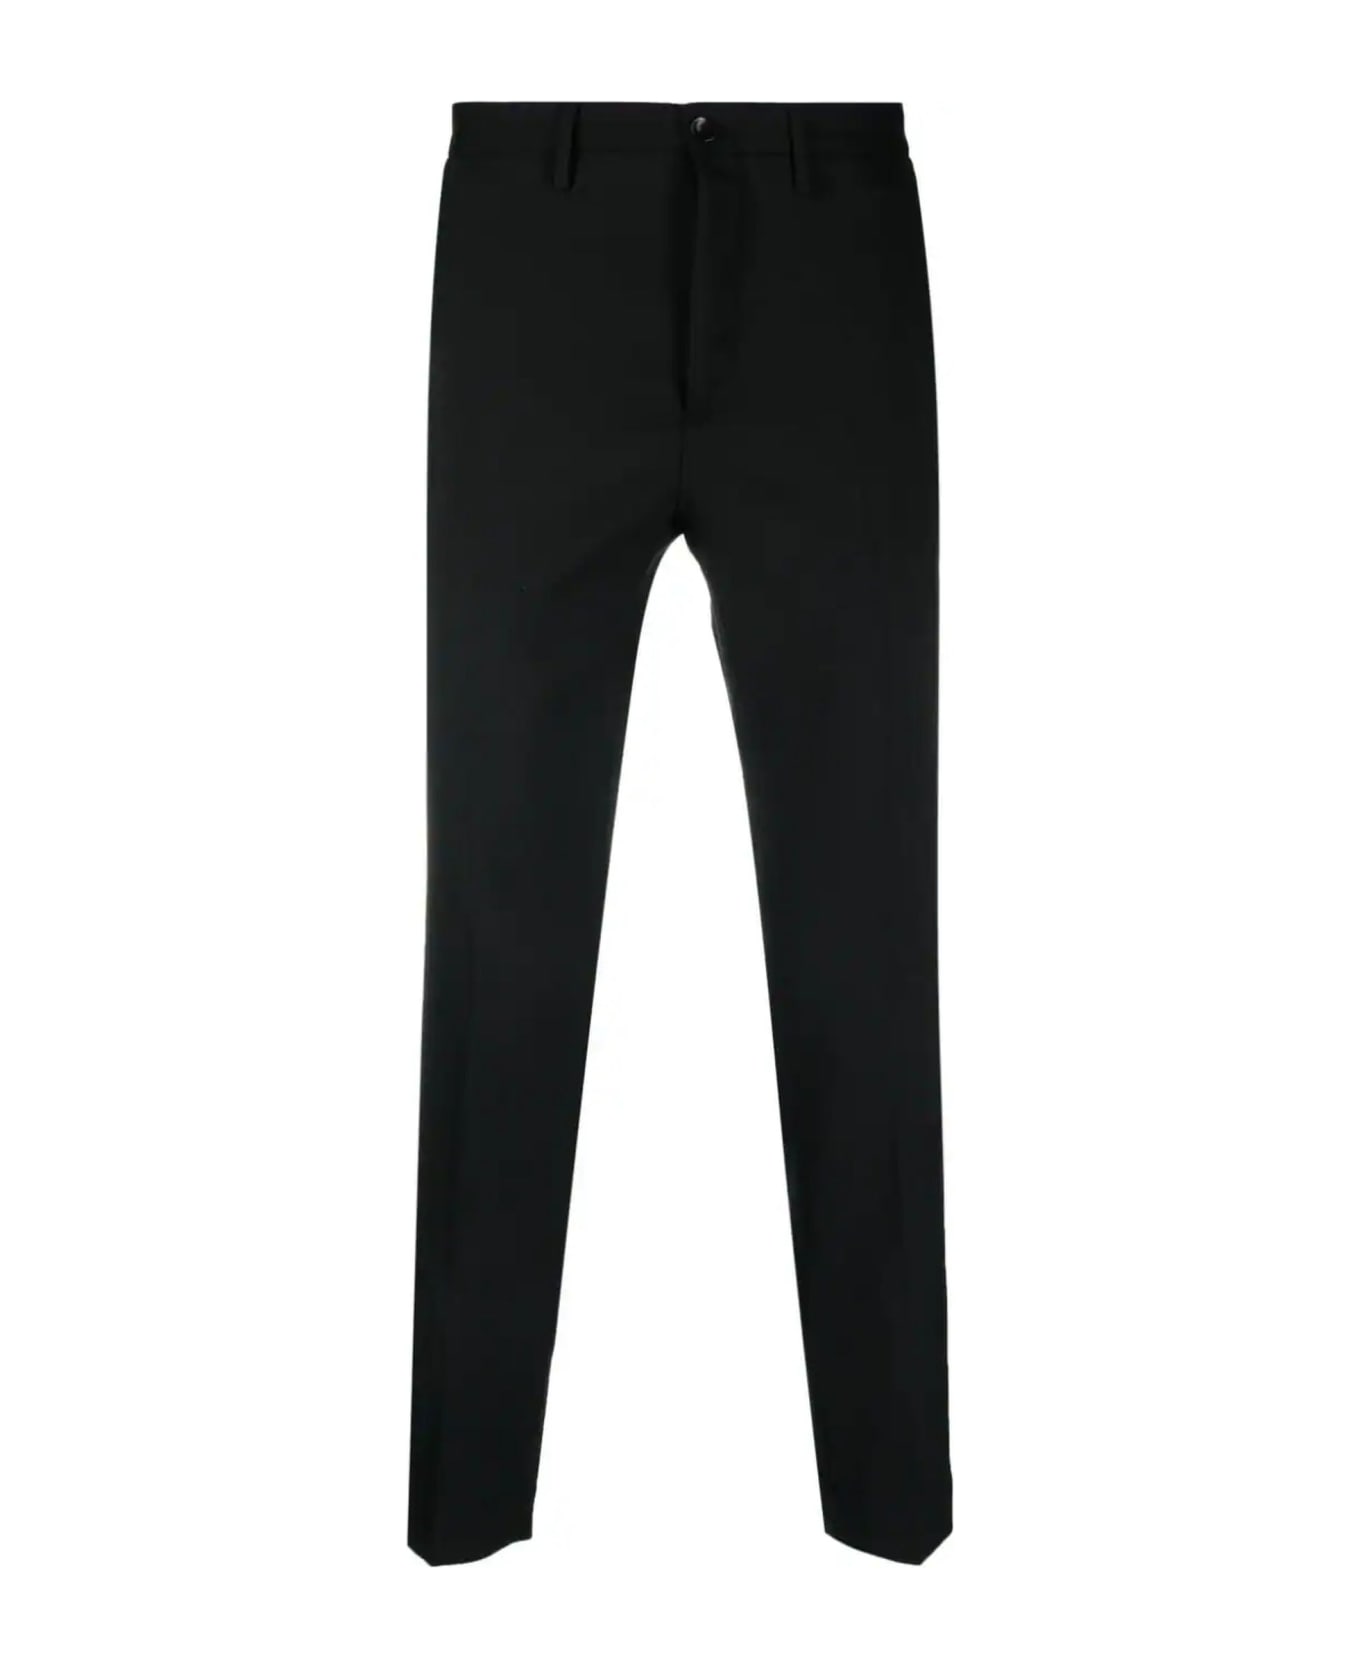 Incotex Black Wool Blend Trousers - Black